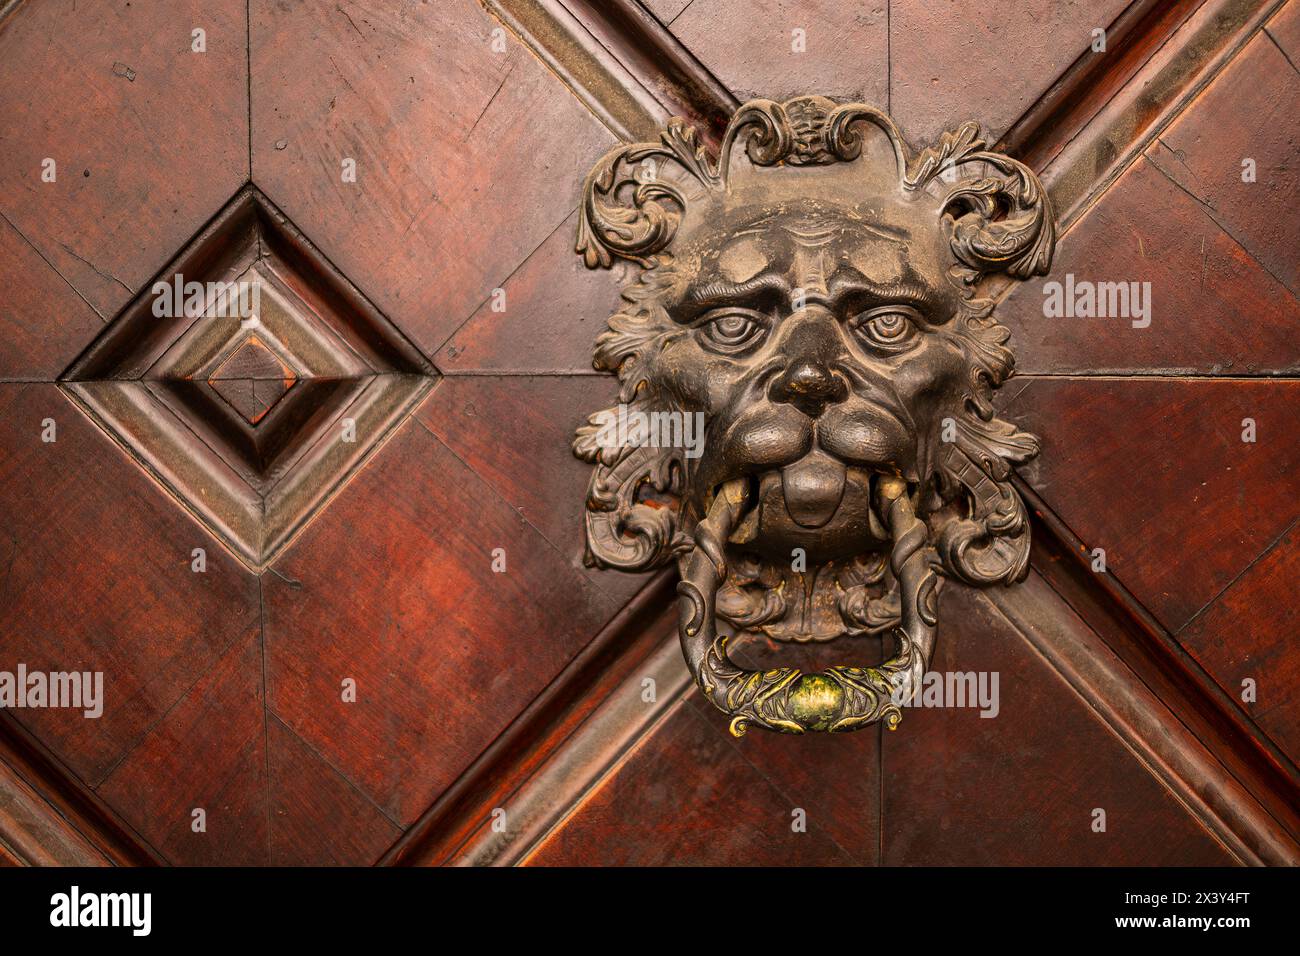 Antiker Türklopfer als Löwenkopf gestaltet, in der historischen Altstadt von Bozen, Südtirol, Italien. Antique door knocker designed as a lion's head, Stock Photo